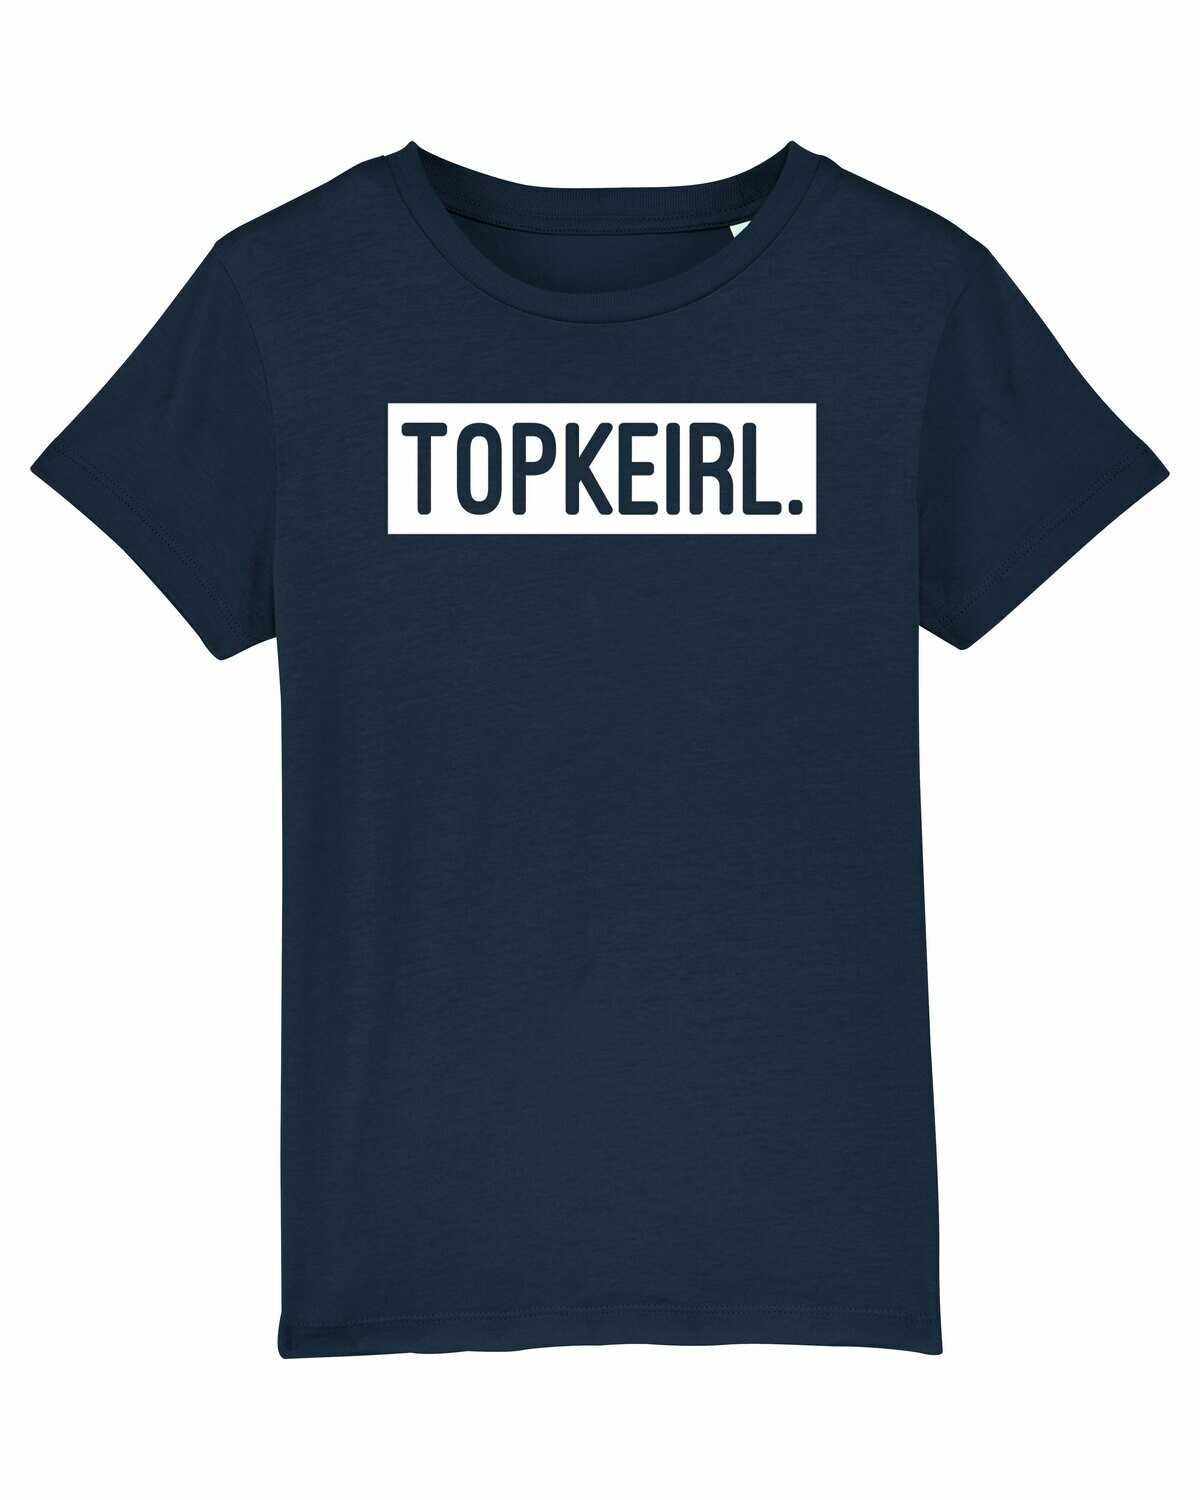 Kids T-shirt Topkeirl